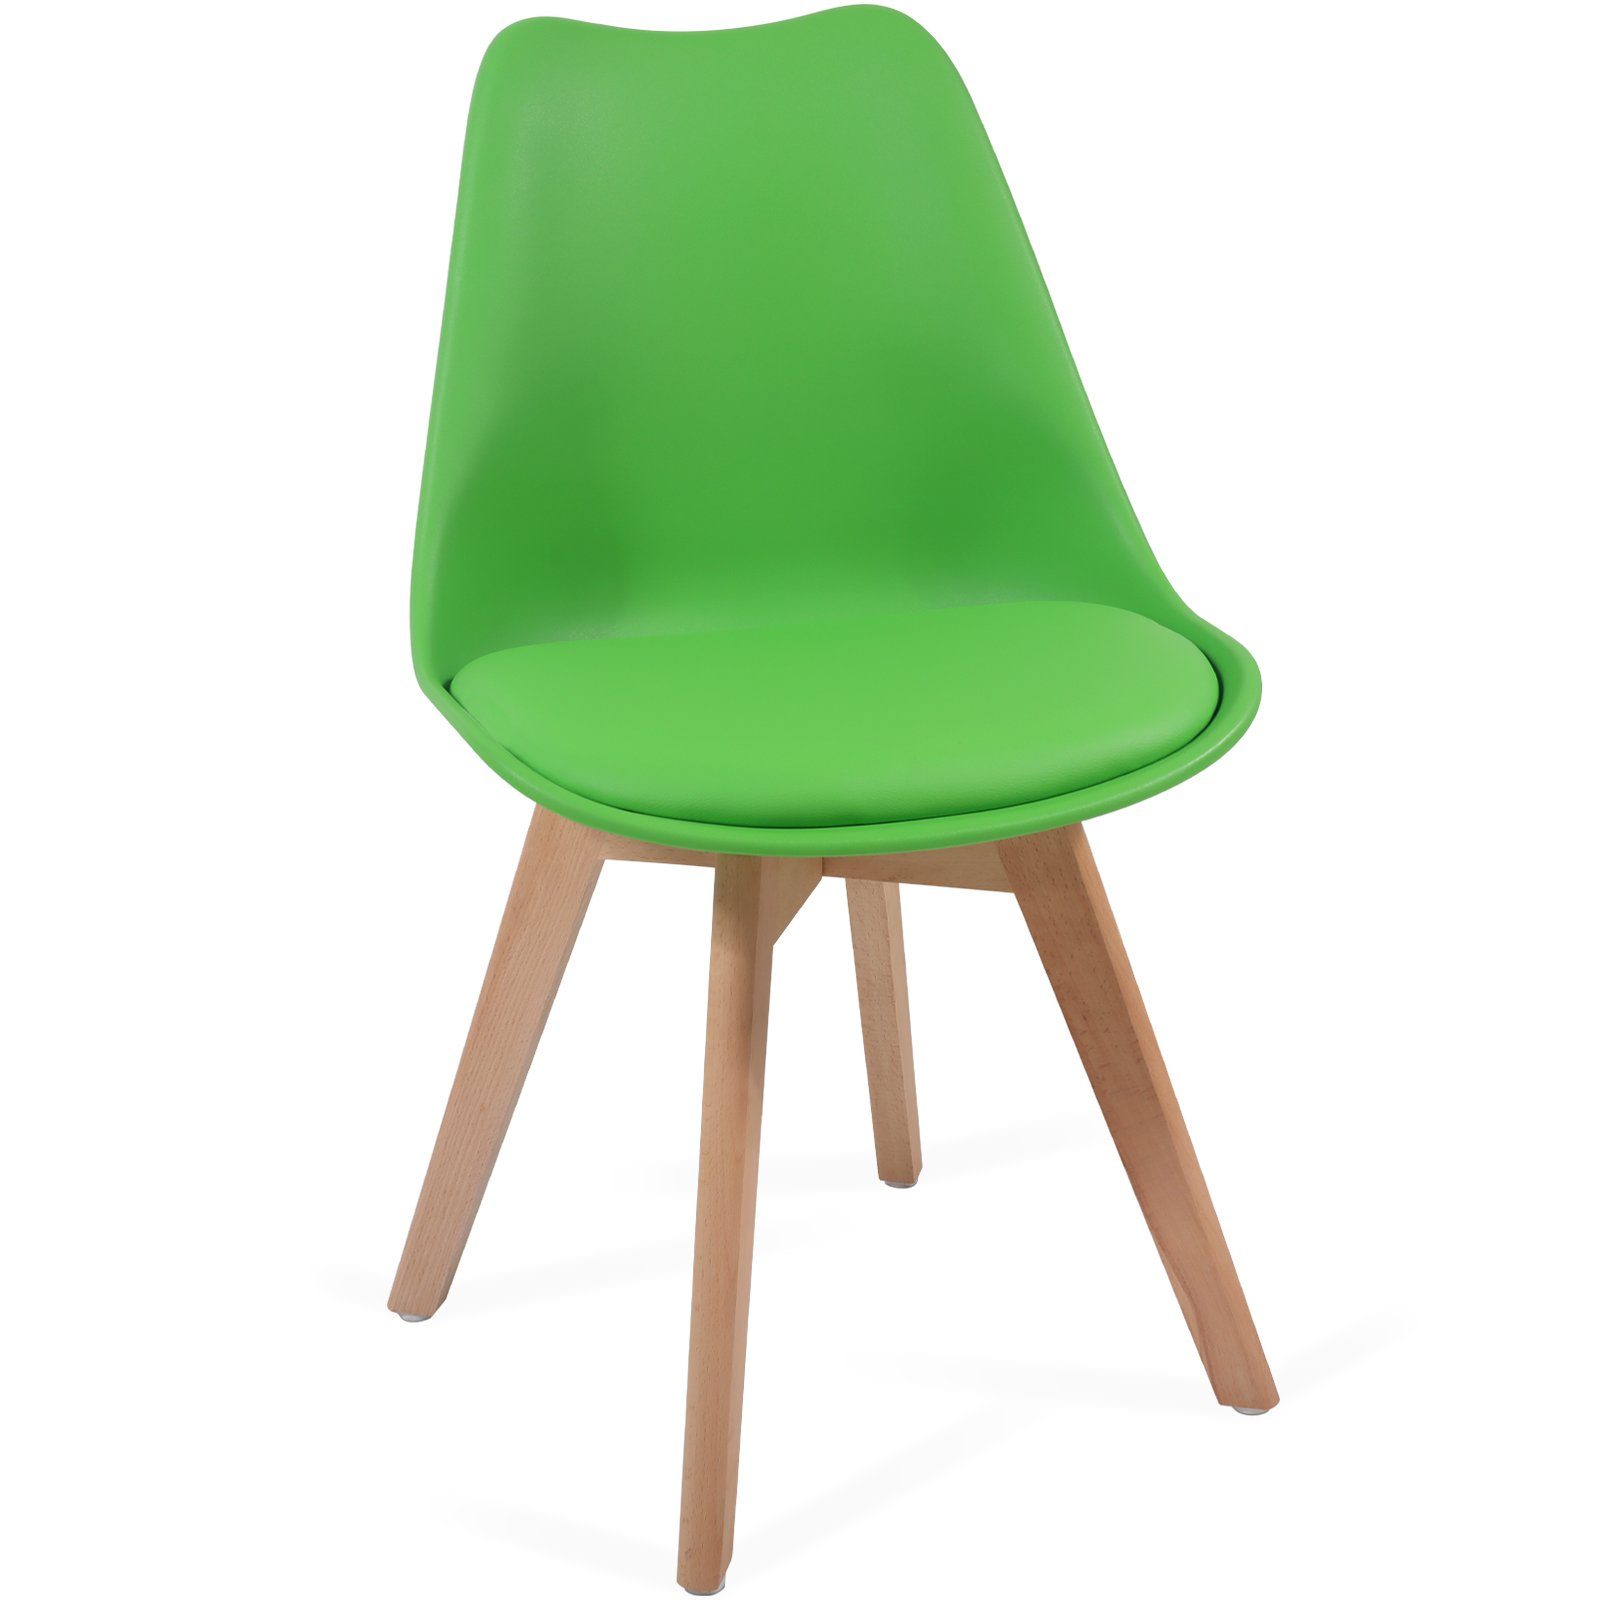 - Esszimmerstuhl 2/4/6/8er aus Farbwahl Massivholz, Kunststoff & MIADOMODO St) Grün Set Esszimmerstühle (2